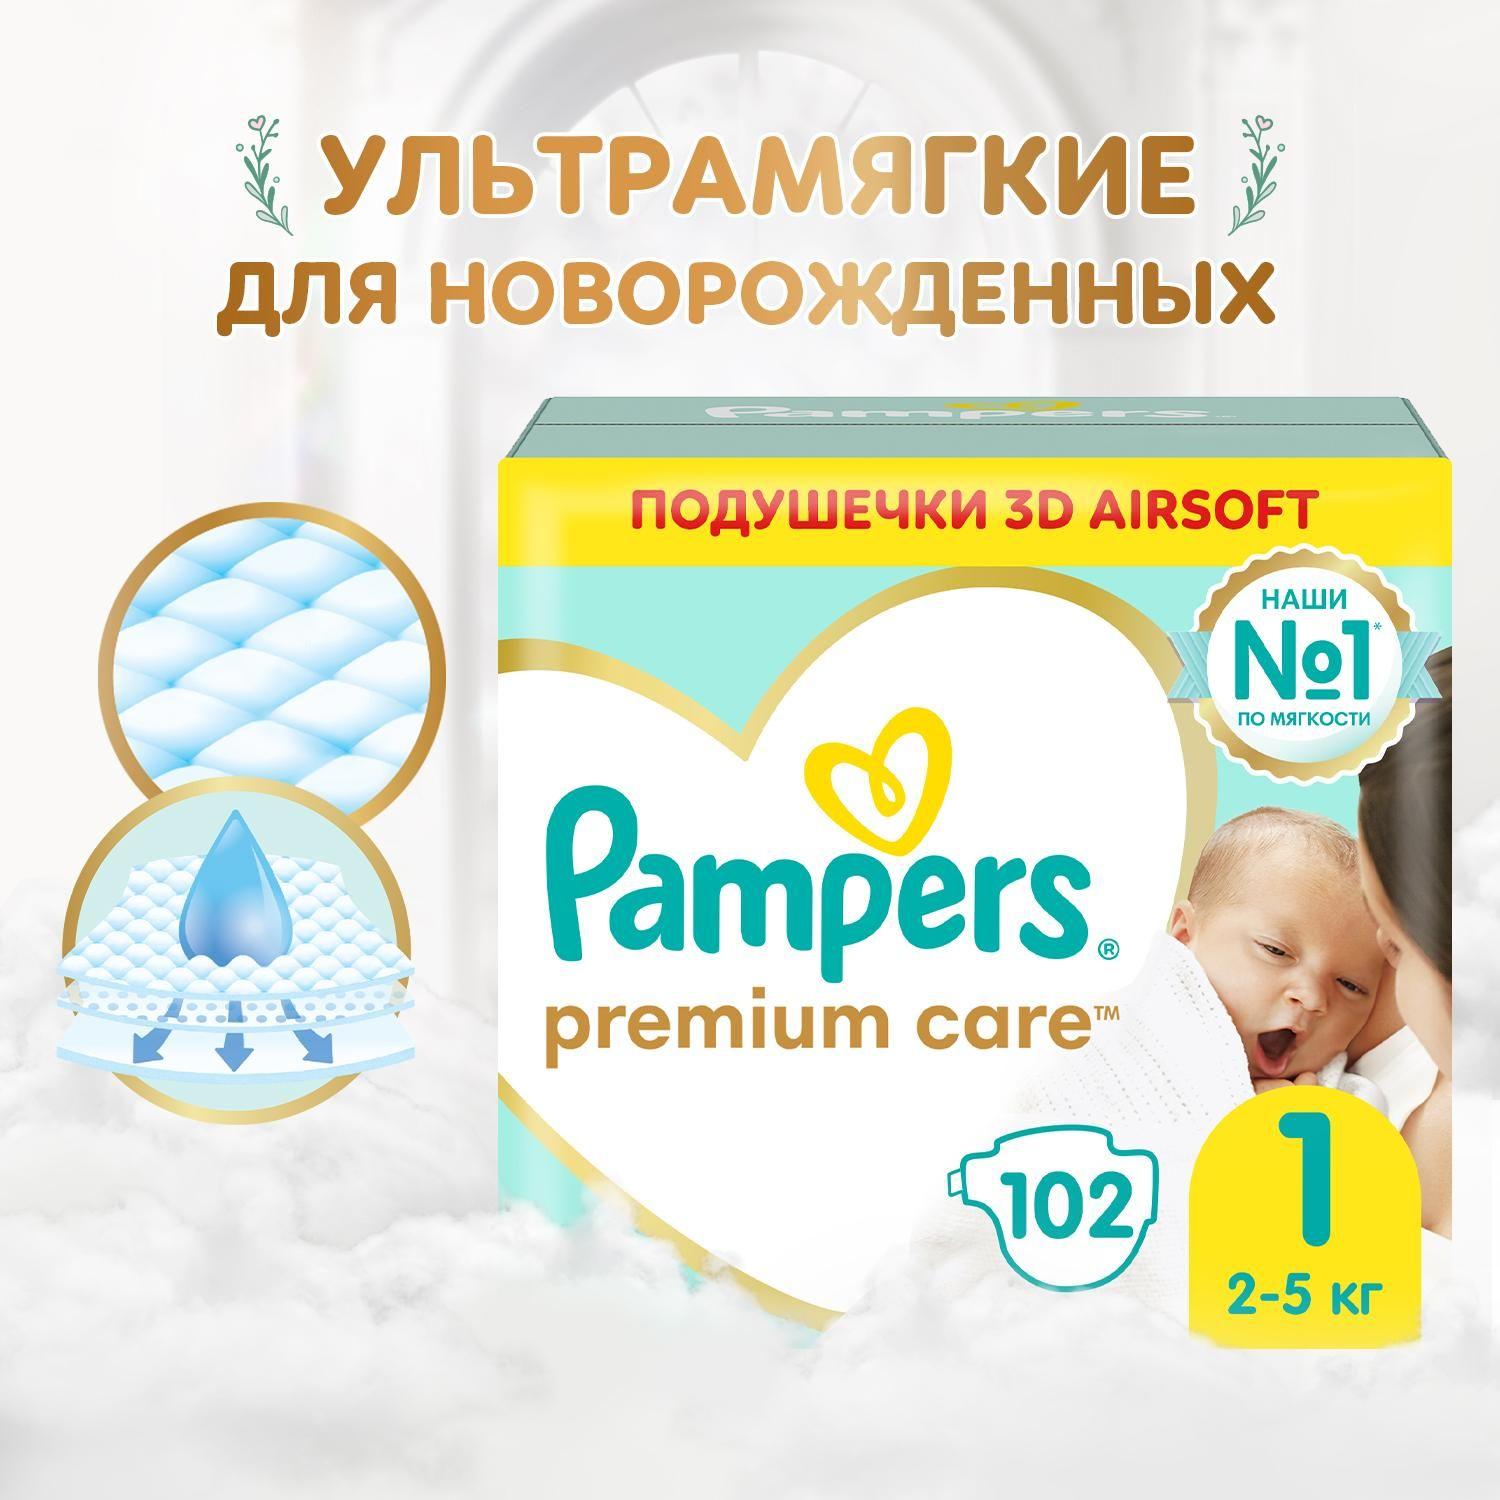 Подгузники для новорожденных Pampers Premium Care 1 размер, 2-5 кг, 102 шт, ультрамягкие